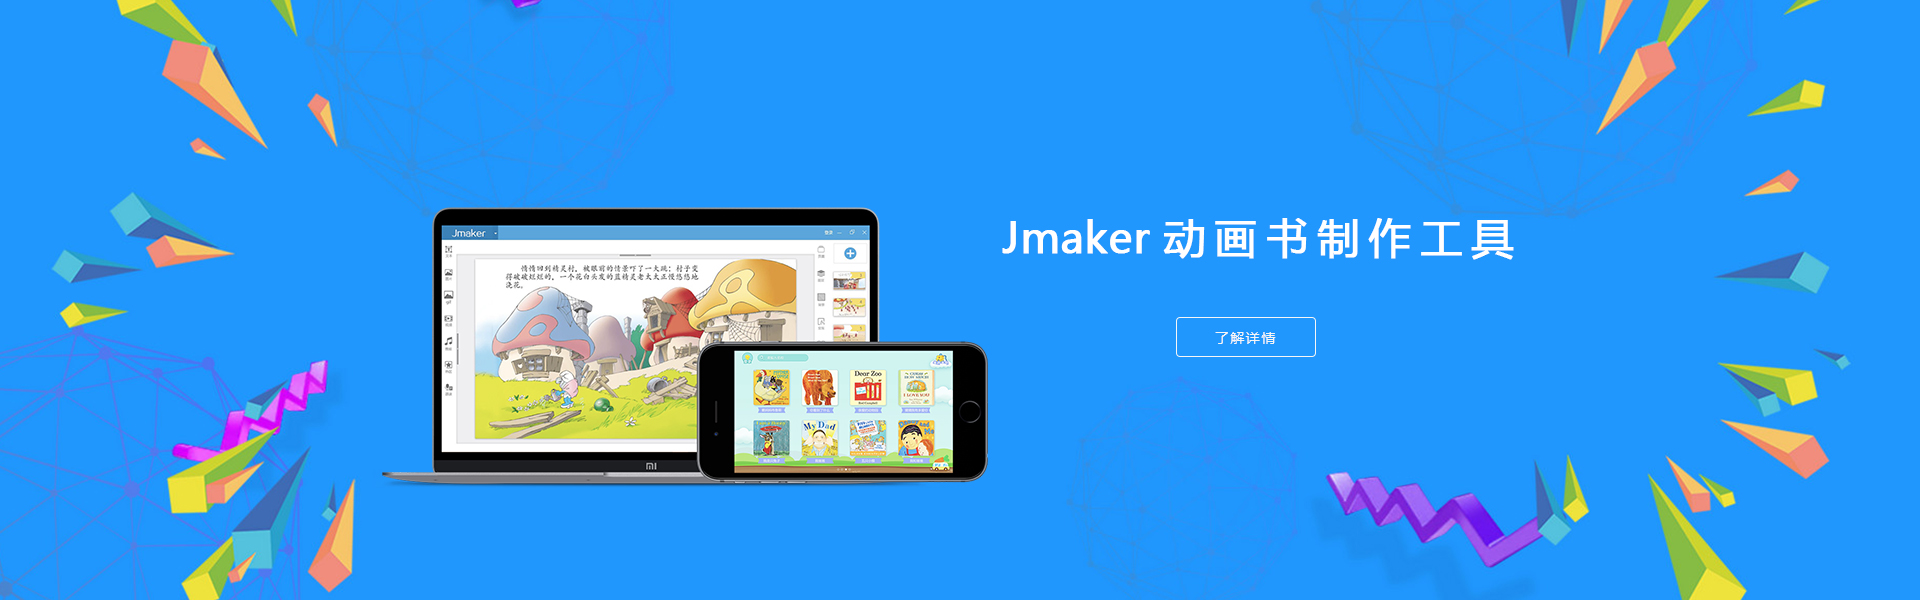 jmaker动画书设计器